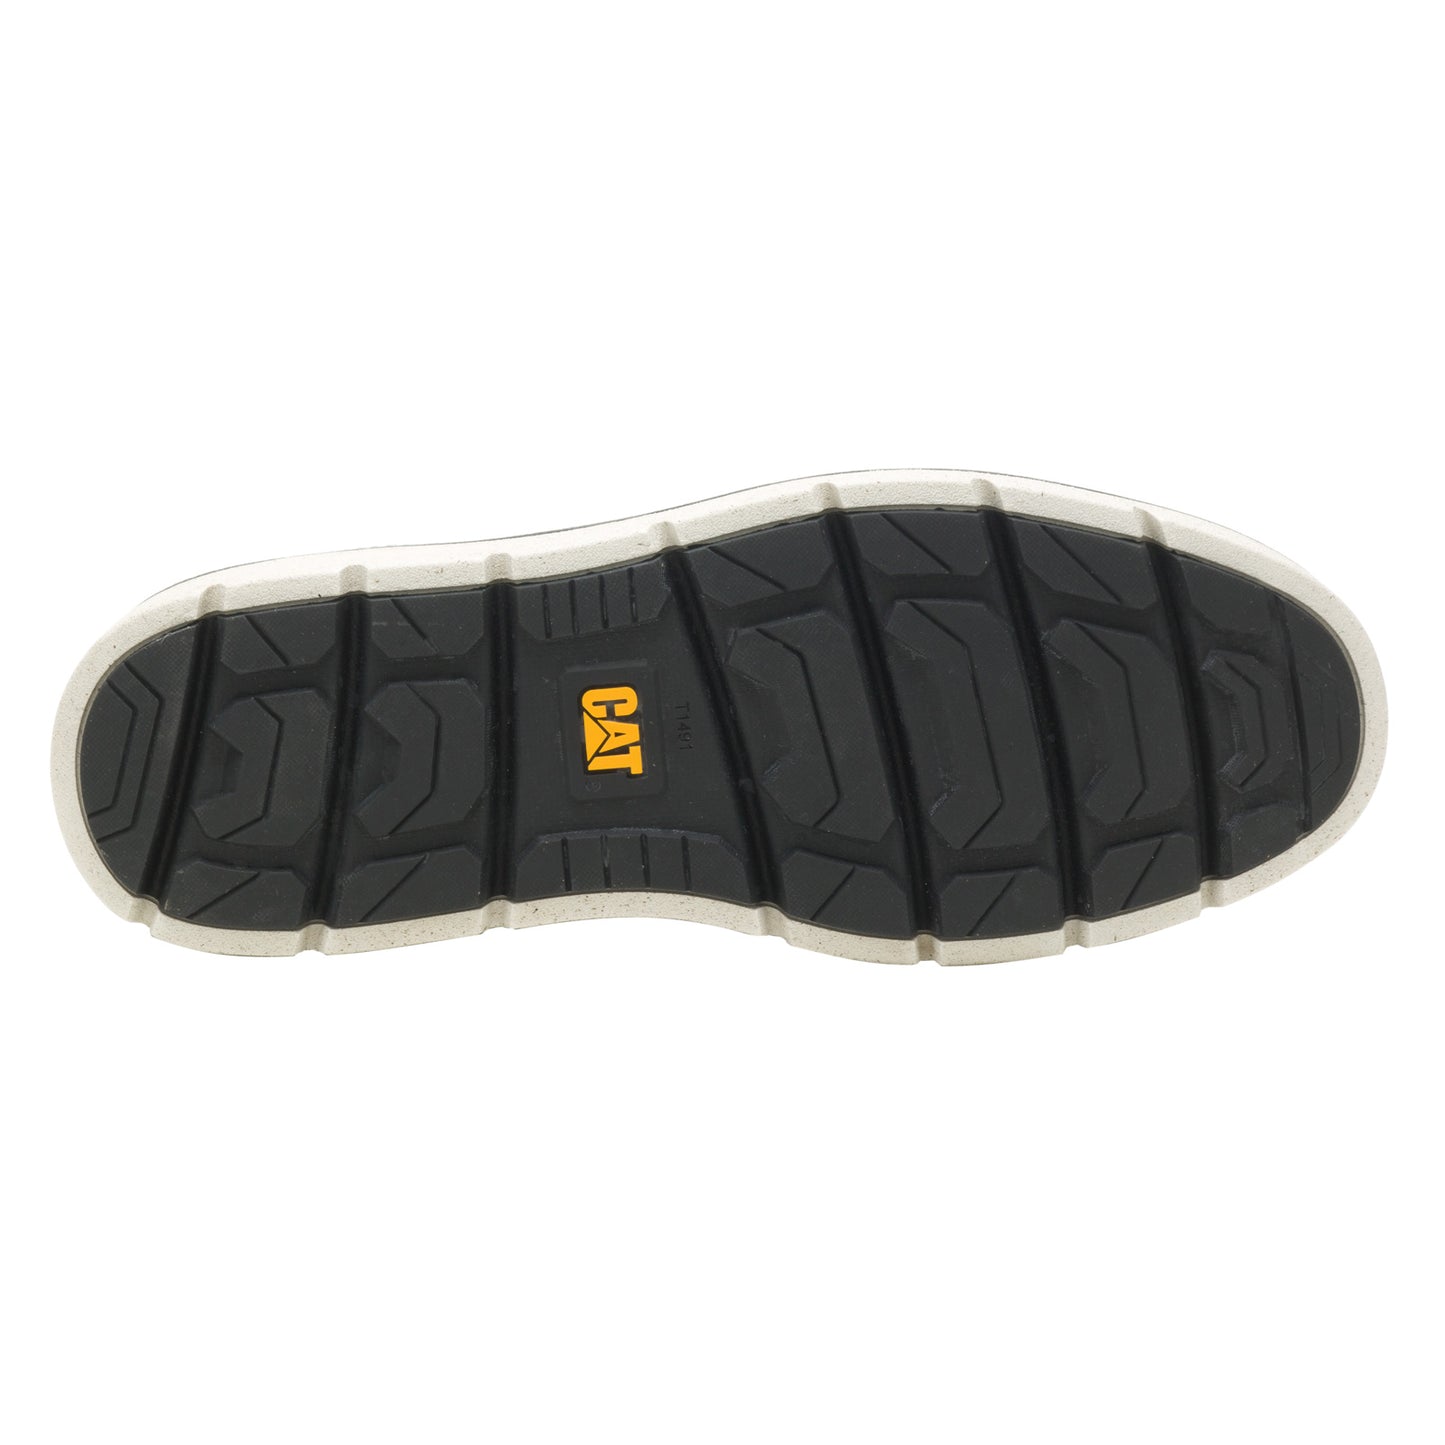 Peltz Shoes  Men's Caterpillar Covert Moc Toe Boot OXBLOOD P725451